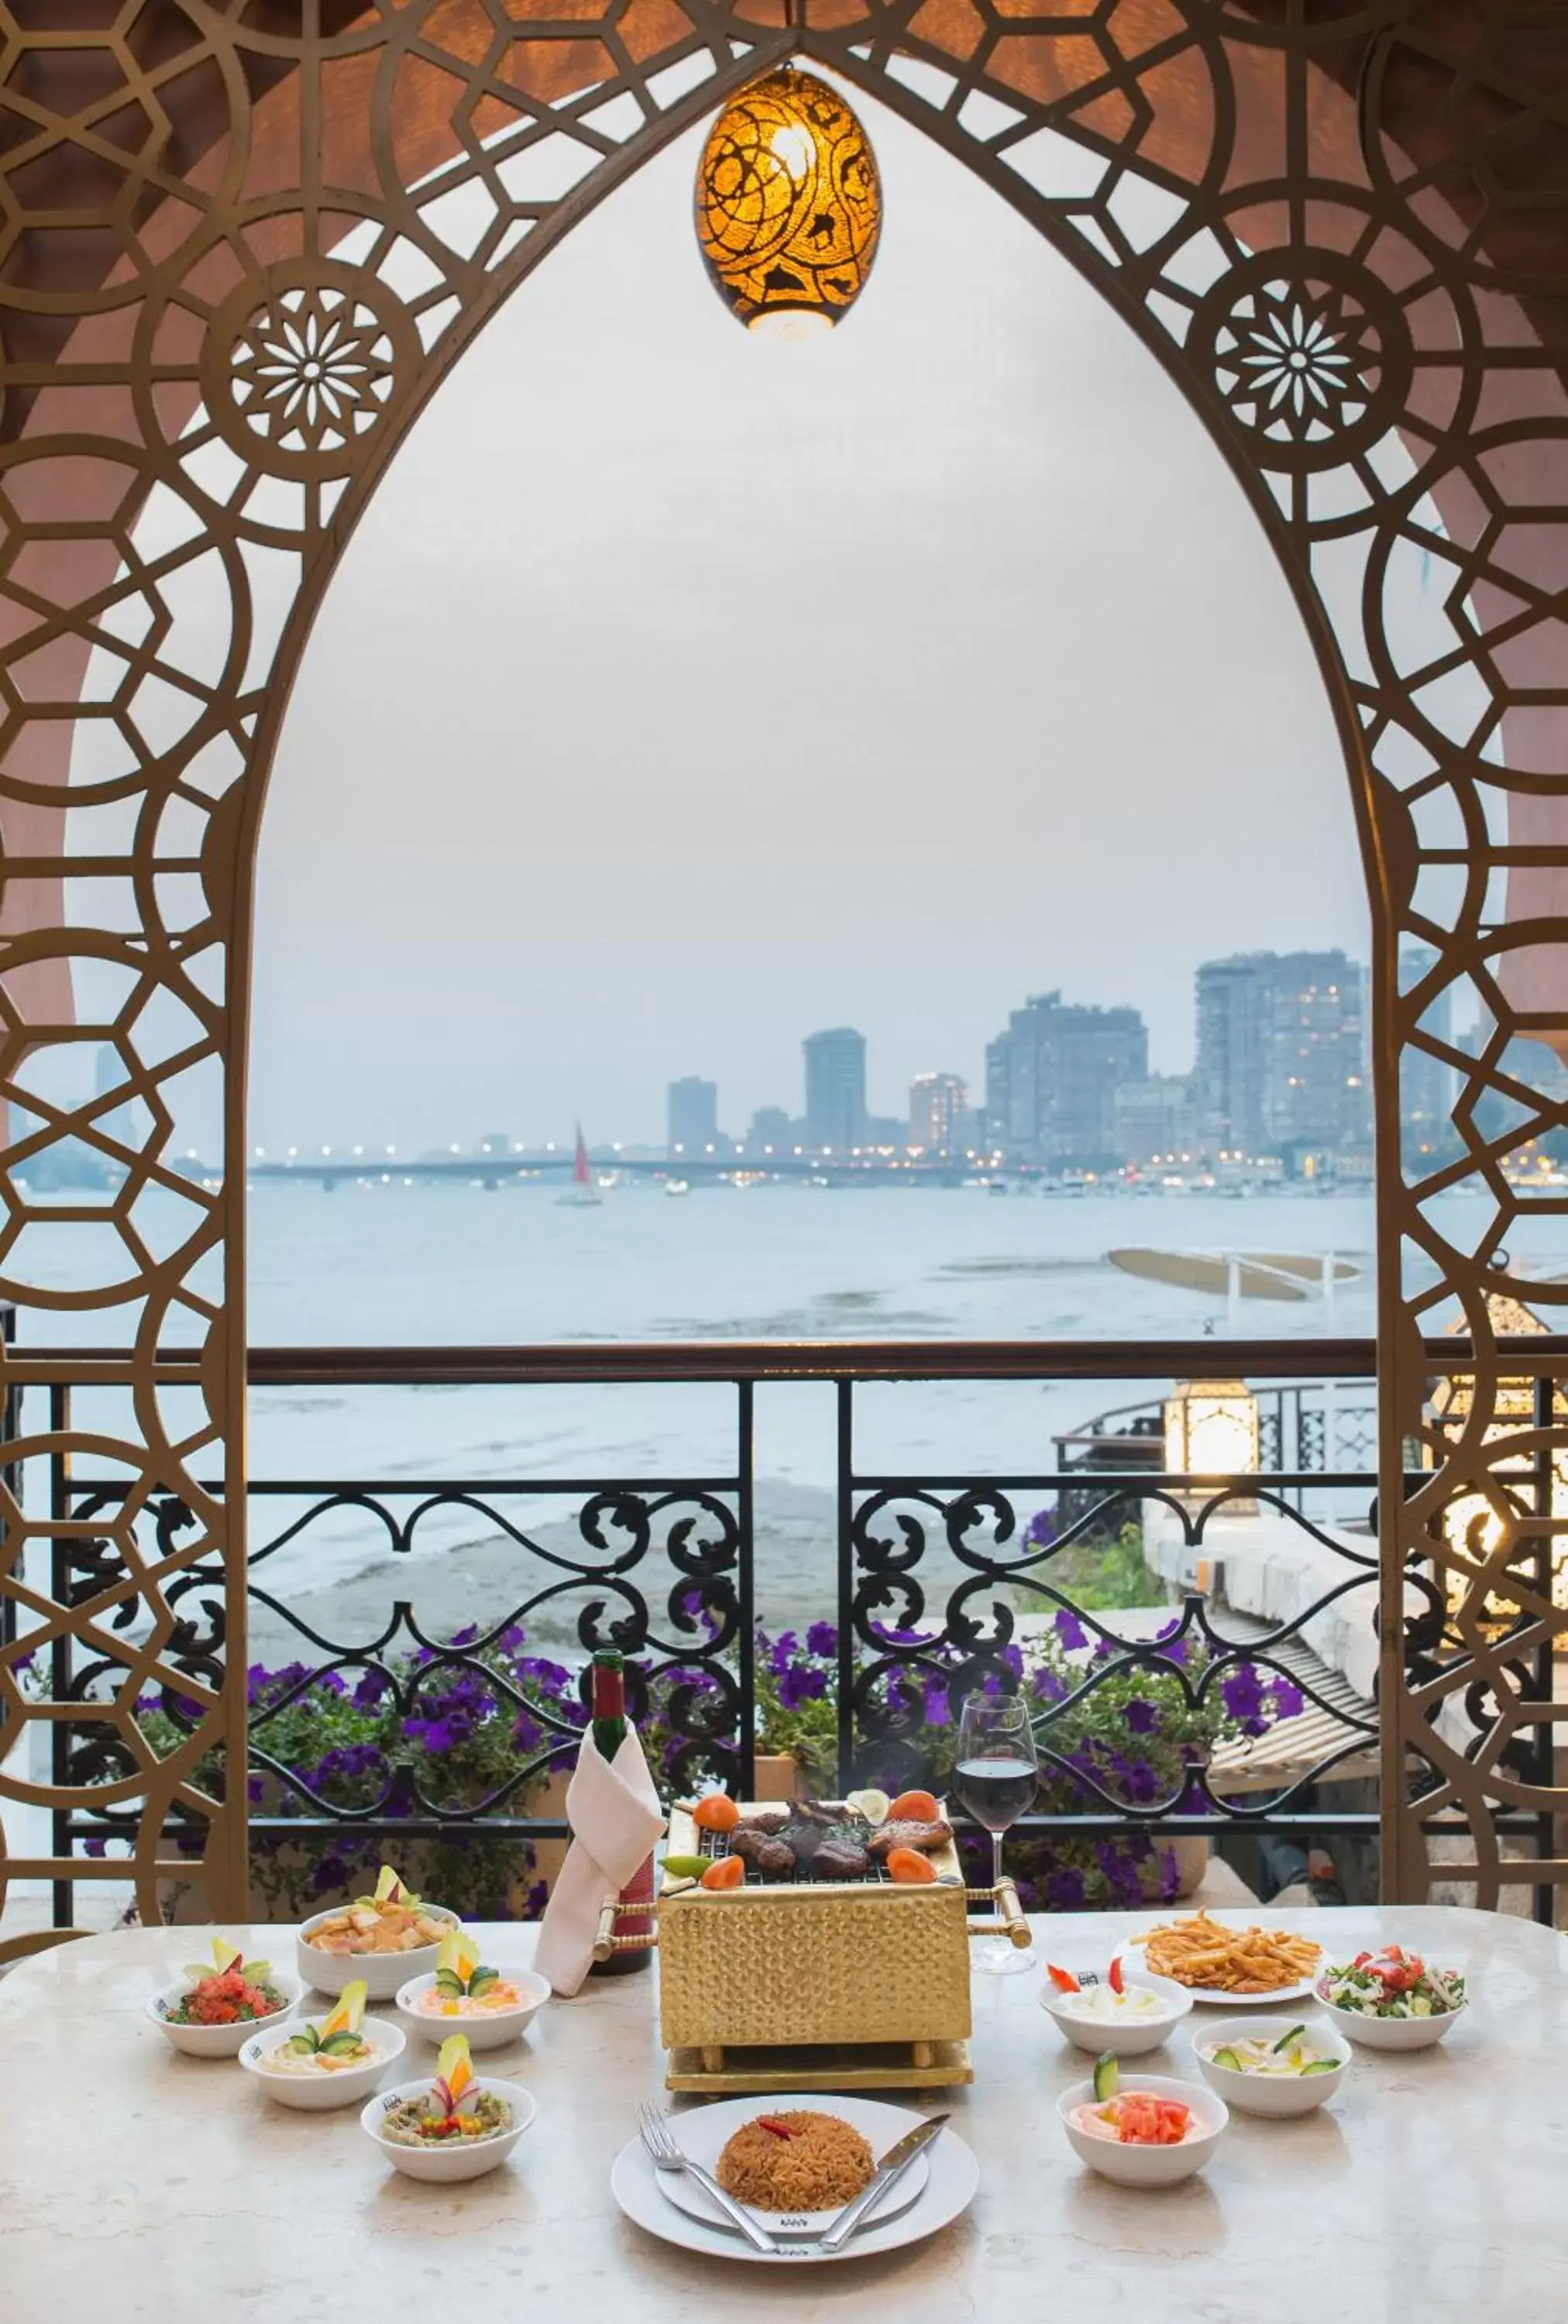 Restaurant/places to eat in Sofitel Cairo Nile El Gezirah